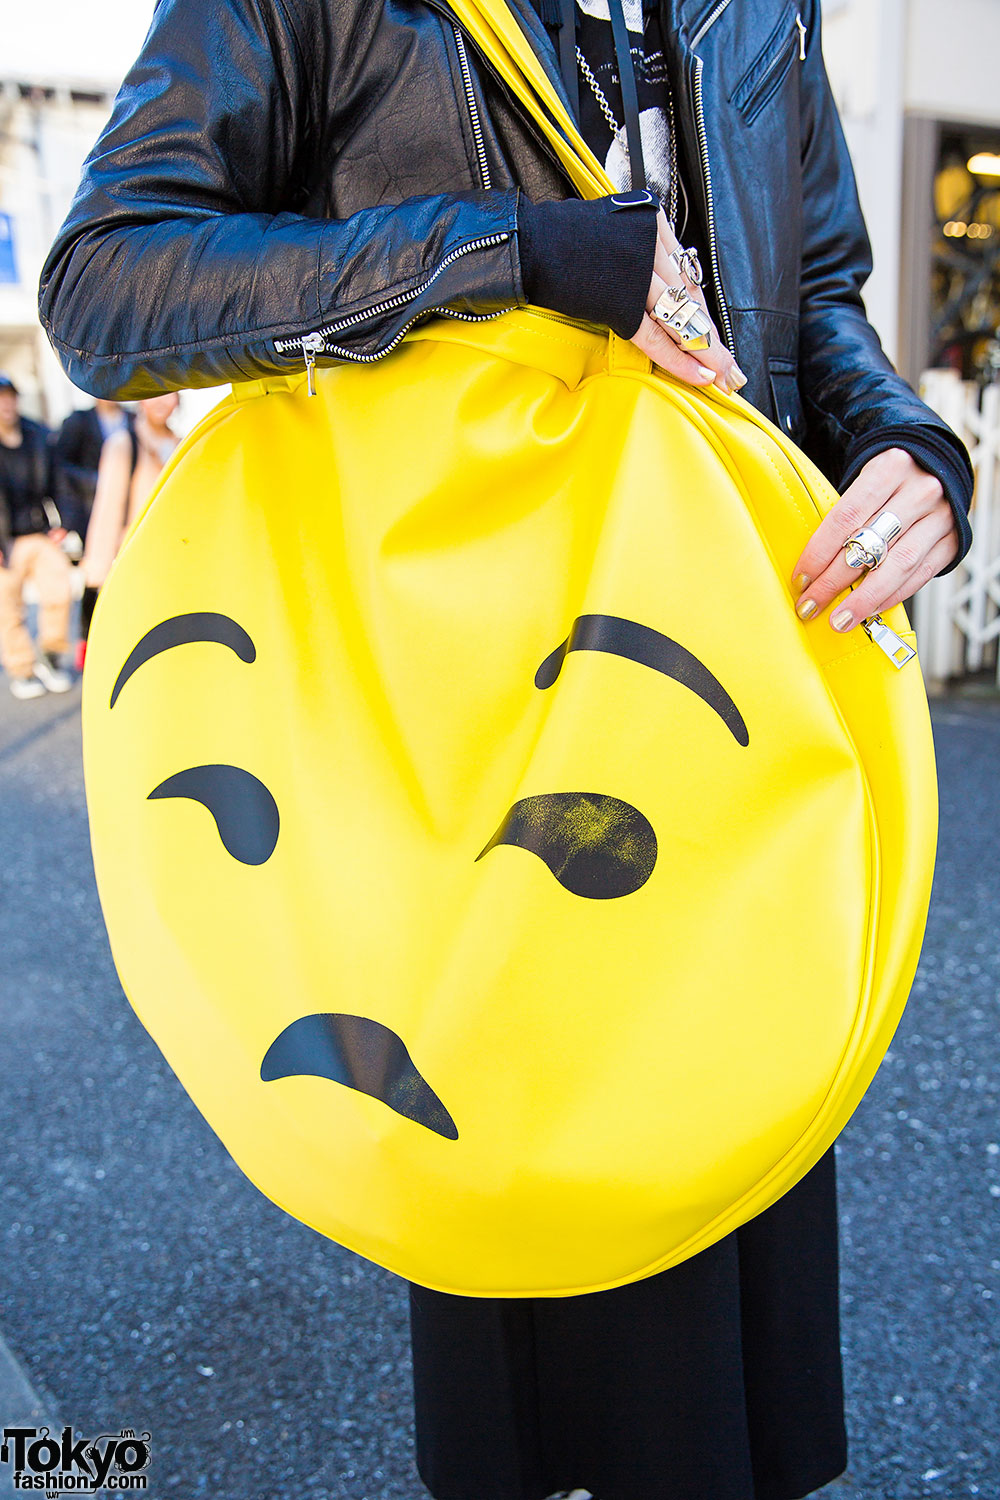 👜 Handbag emoji Meaning | Dictionary.com